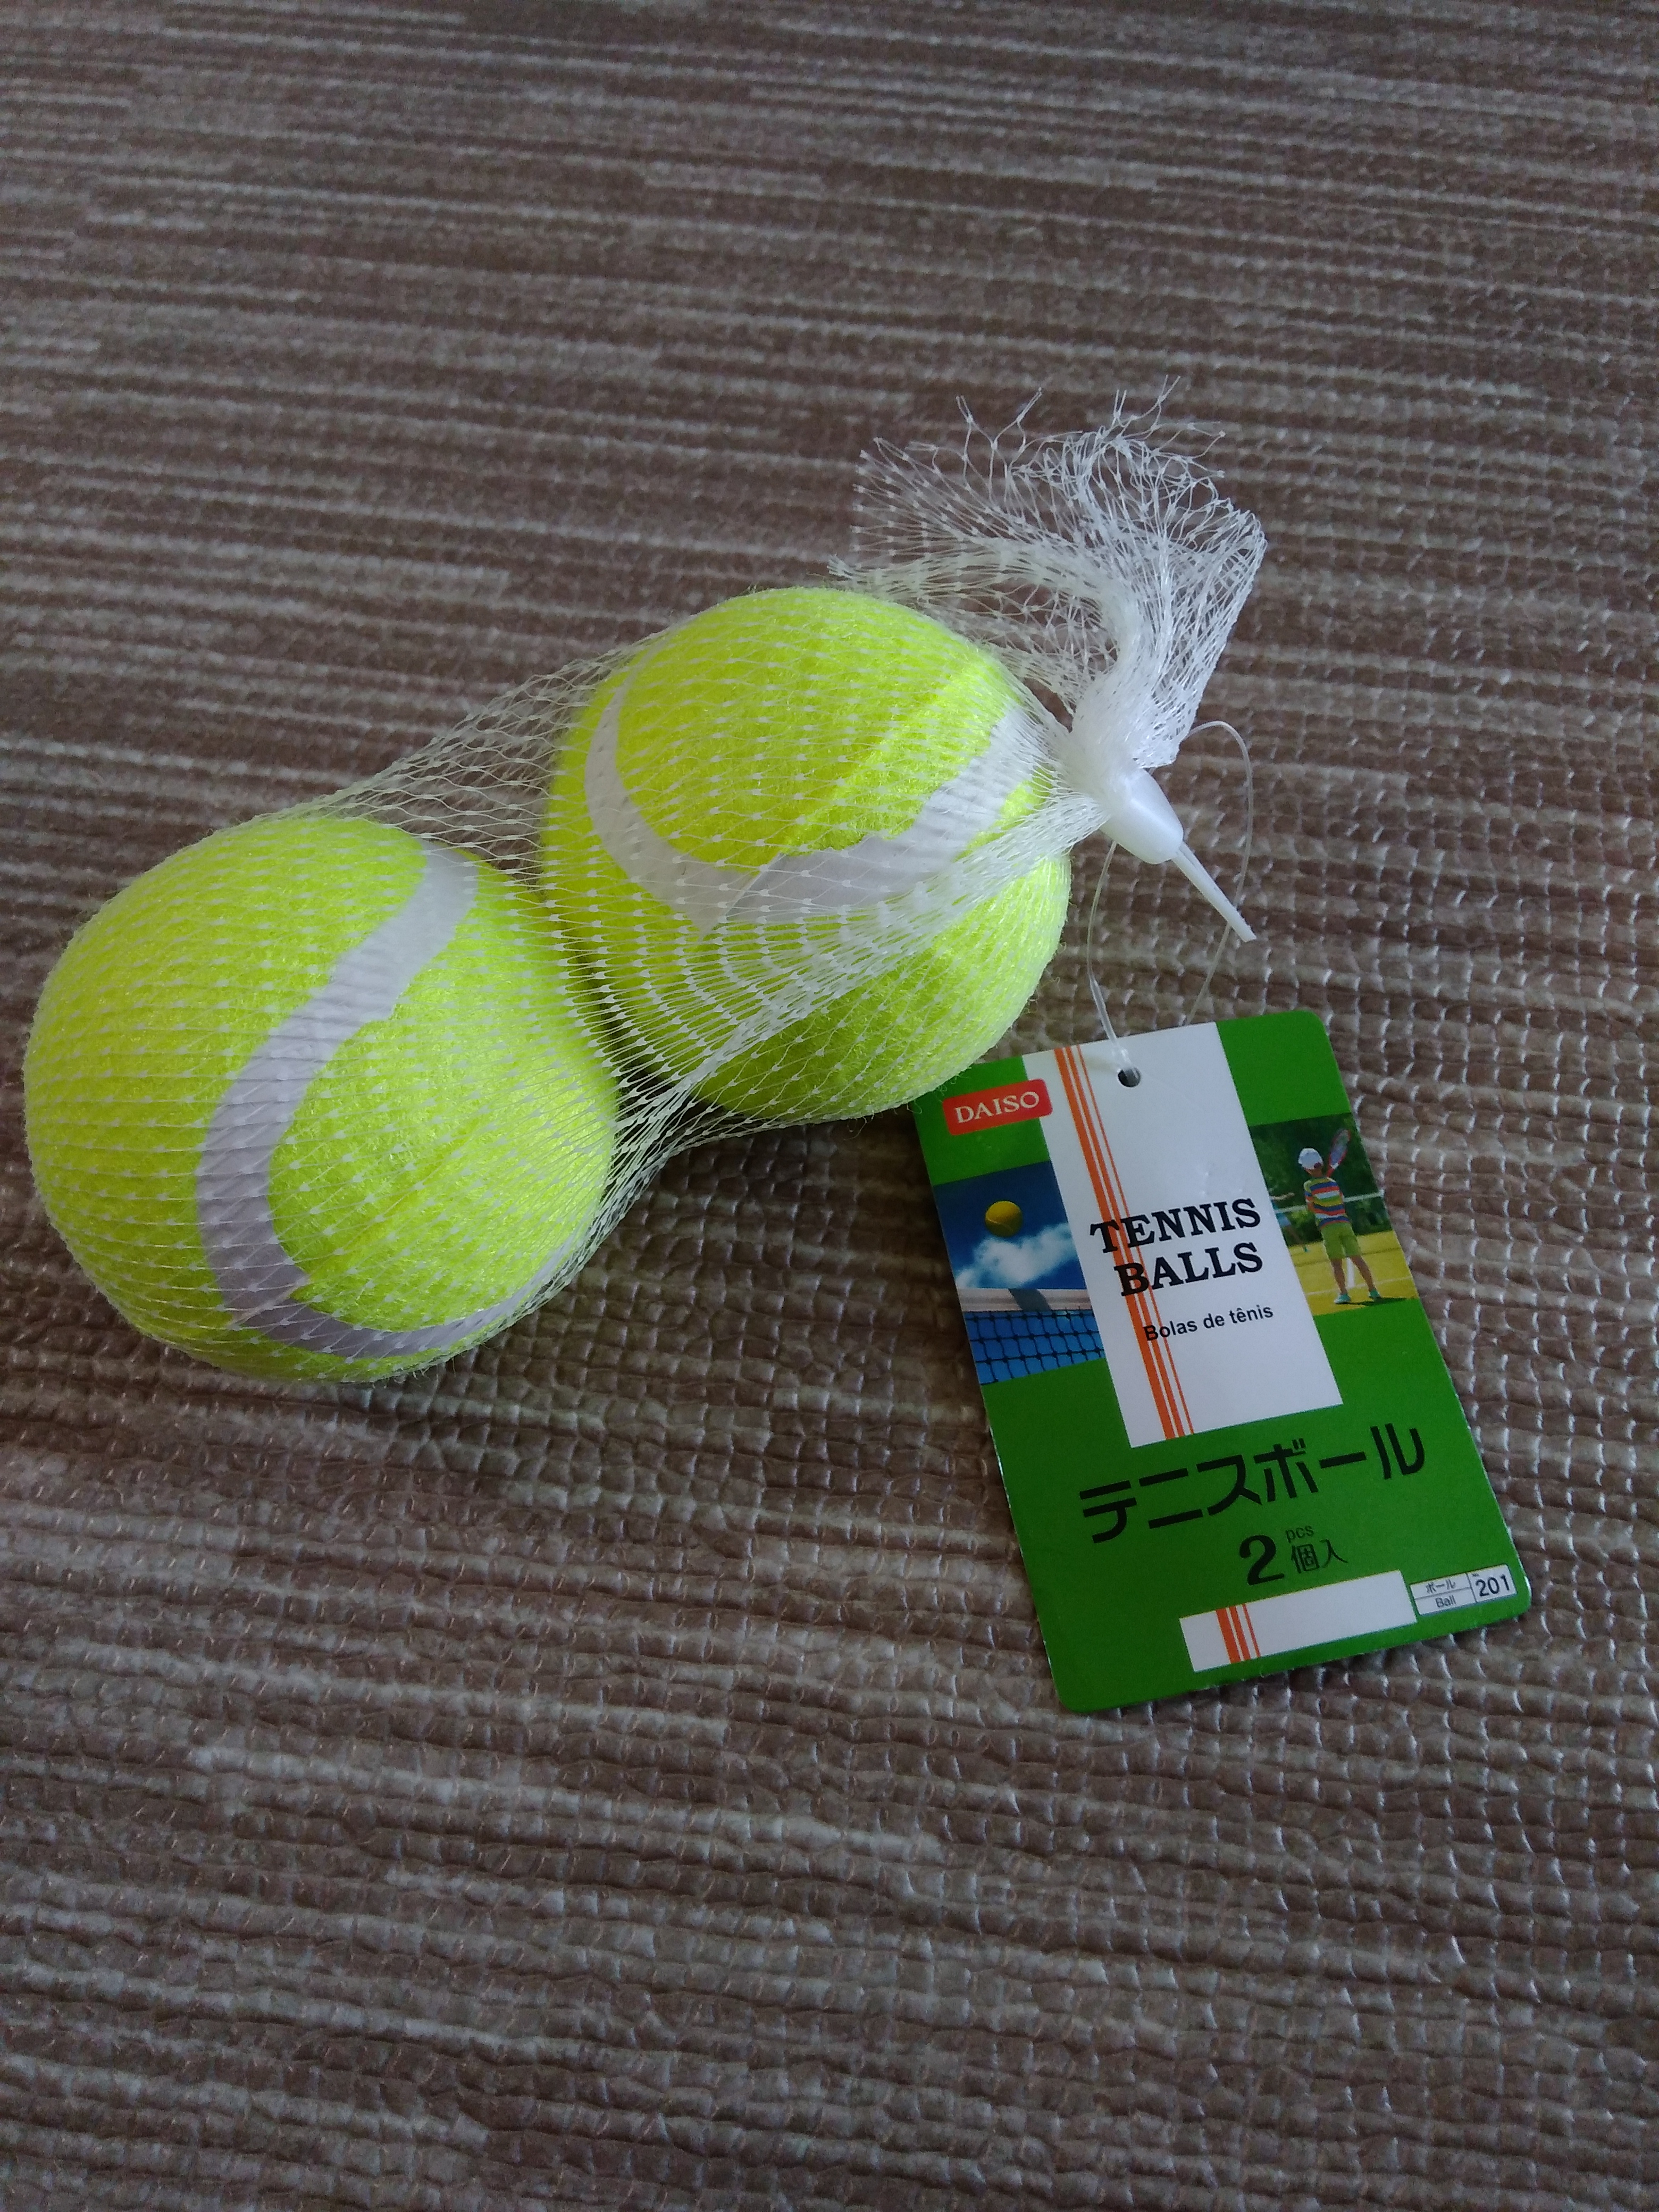 衝撃 １００円ショップのテニスボールを打ってみた おすすめテニスラケット講座